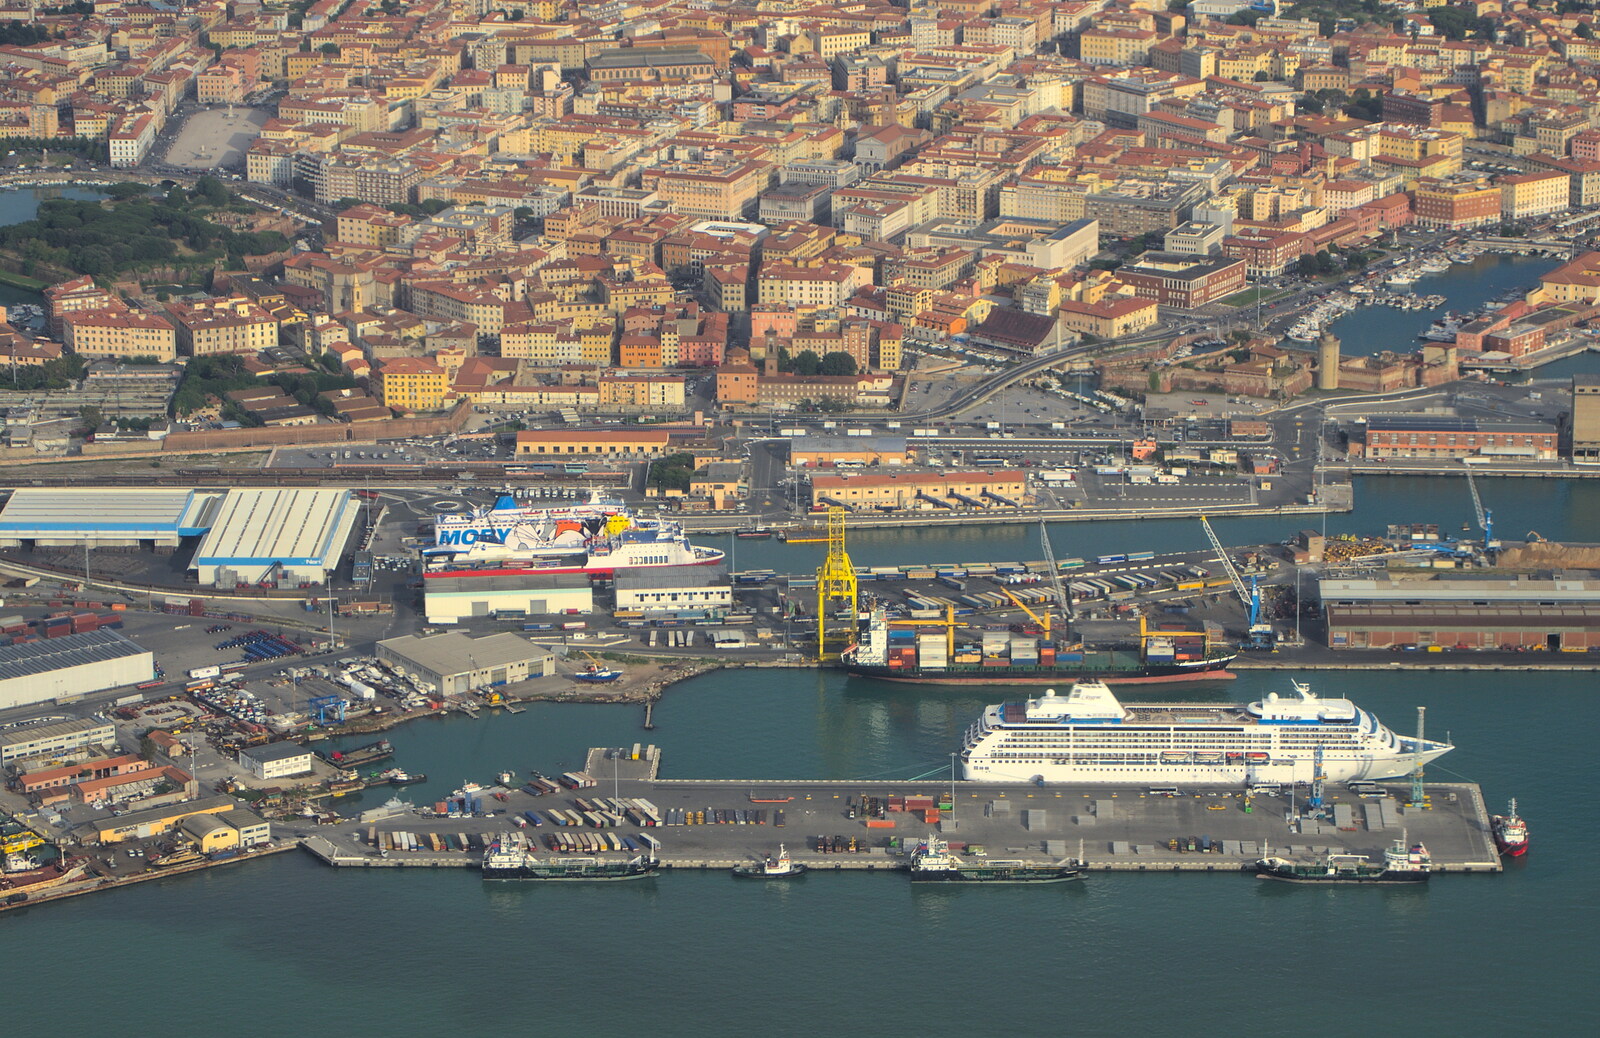 Marconi, Arezzo and the Sagra del Maccherone Festival, Battifolle, Tuscany - 9th June 2013: Big ships in Pisa harbour